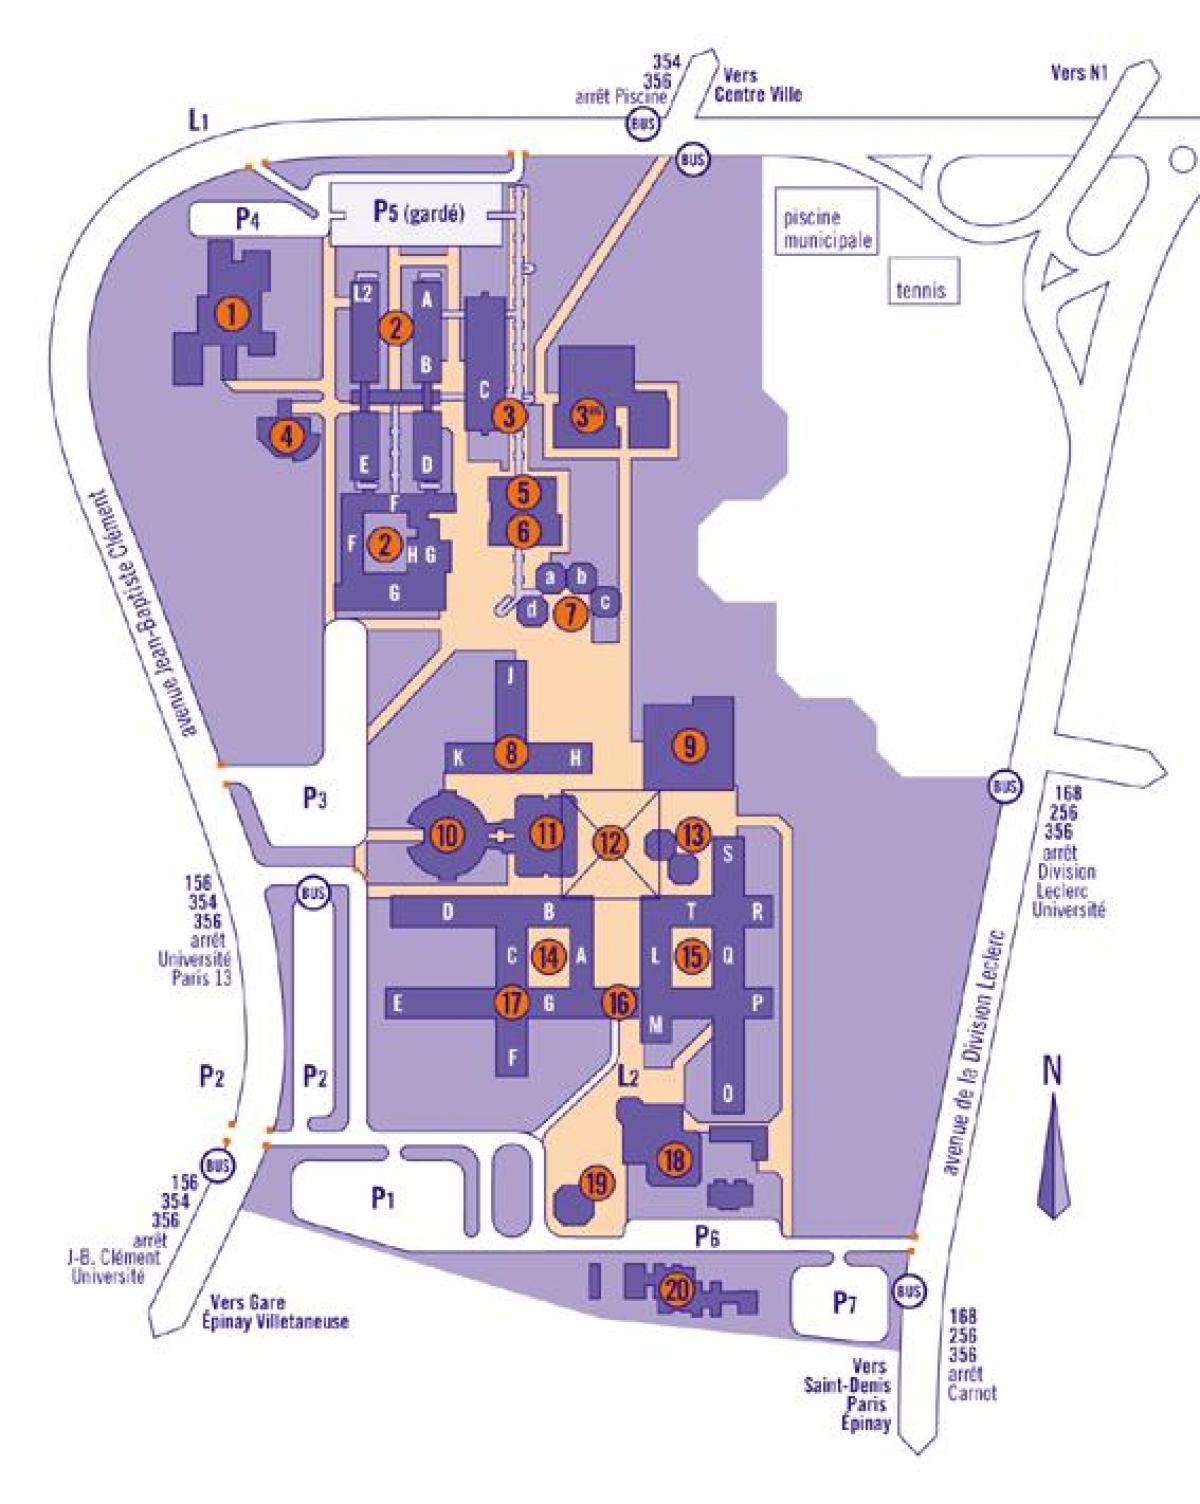 რუკა უნივერსიტეტი პარიზში 13